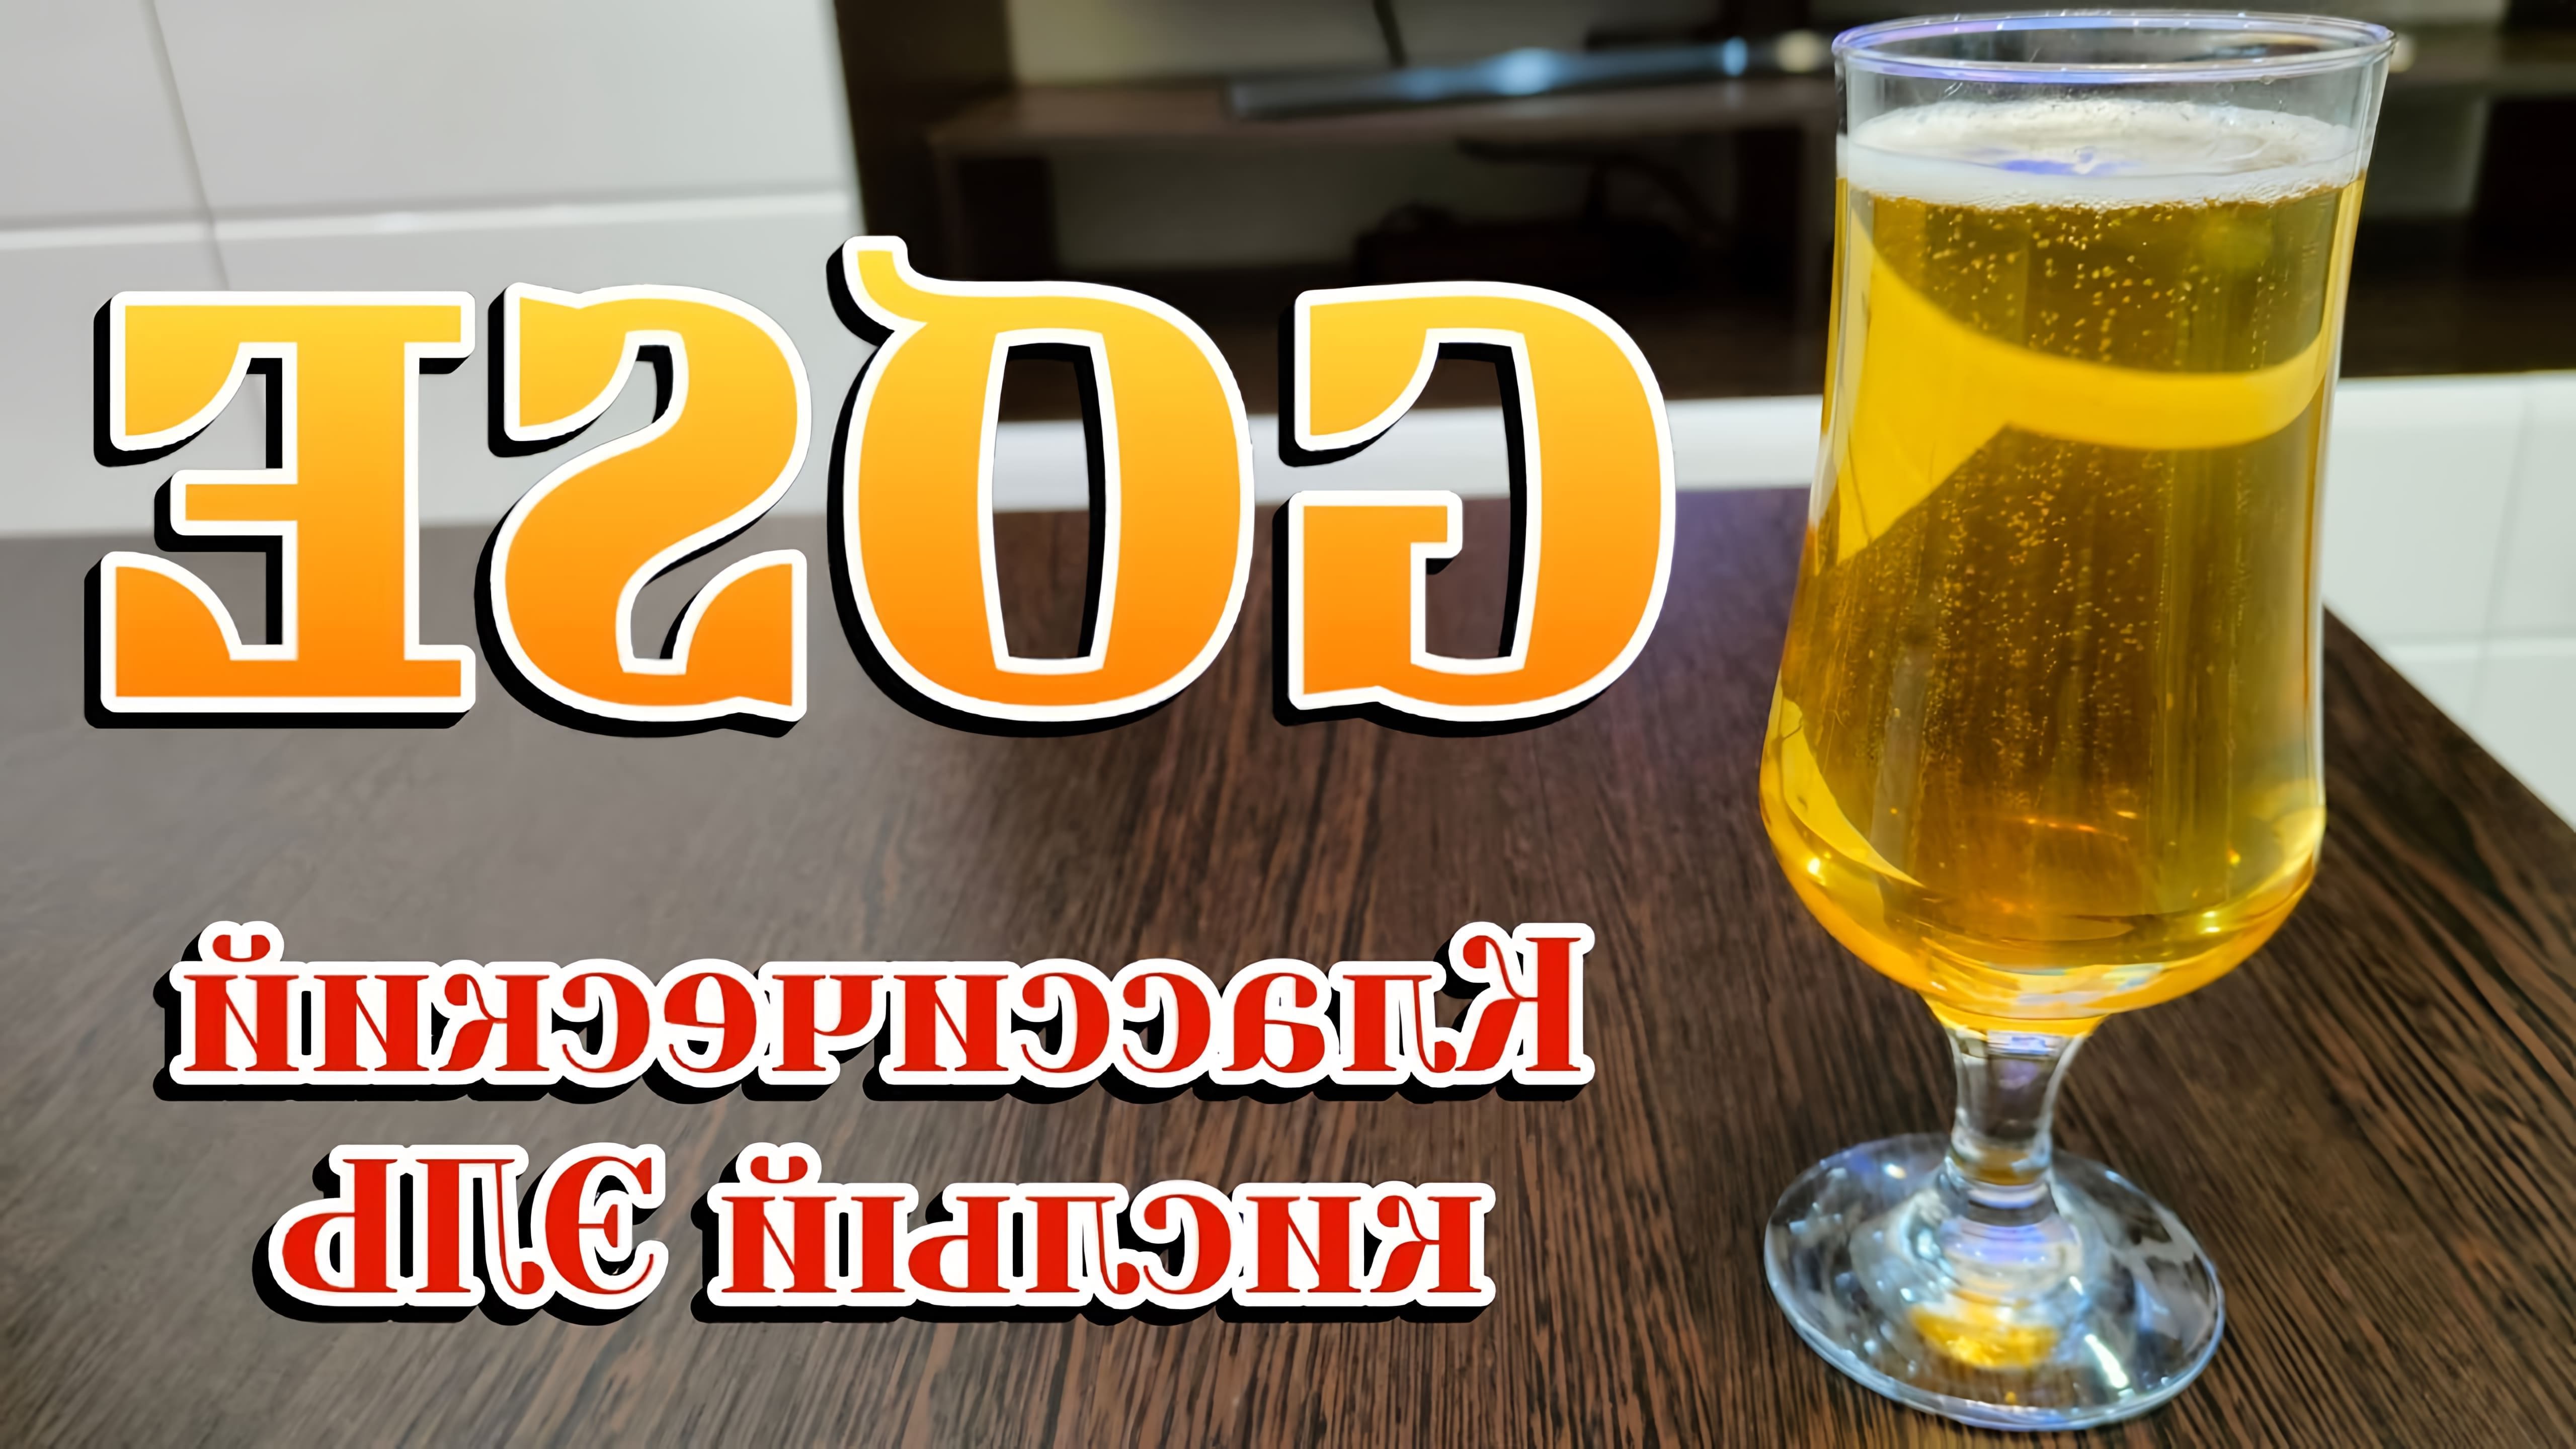 Рецепт пива ГОЗЕ - это классический кислый Эль, который можно приготовить в домашних условиях